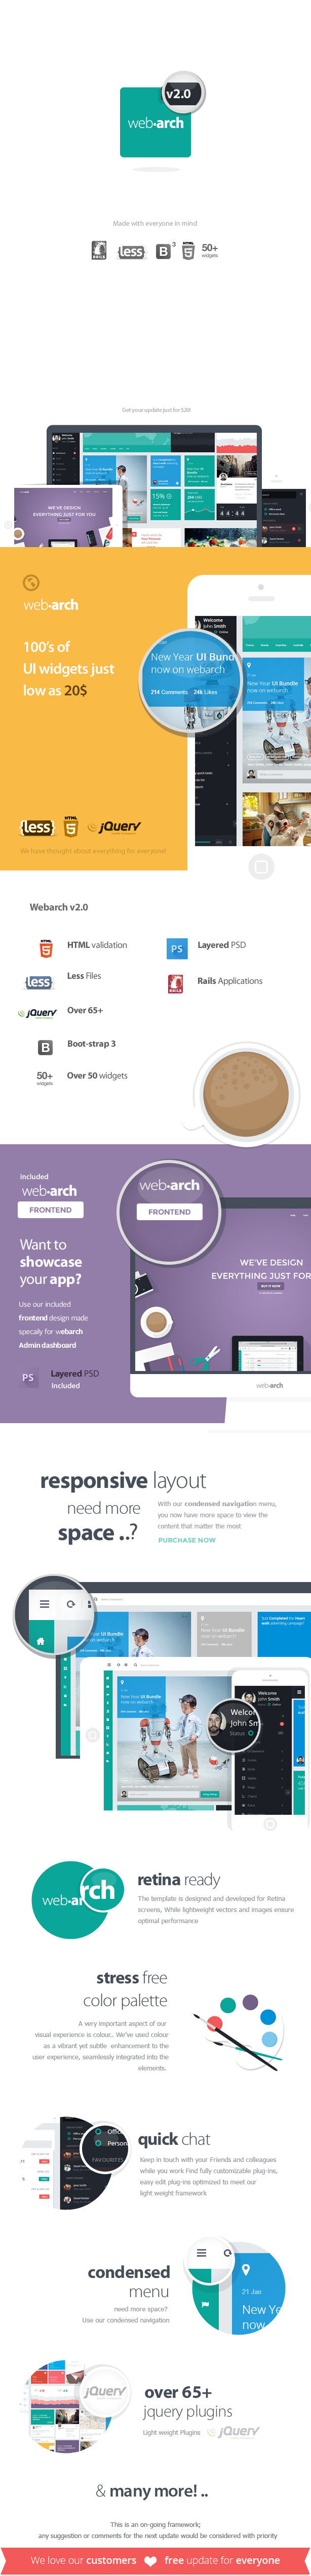 representaion - Webarch - Responsive Admin Dashboard Template